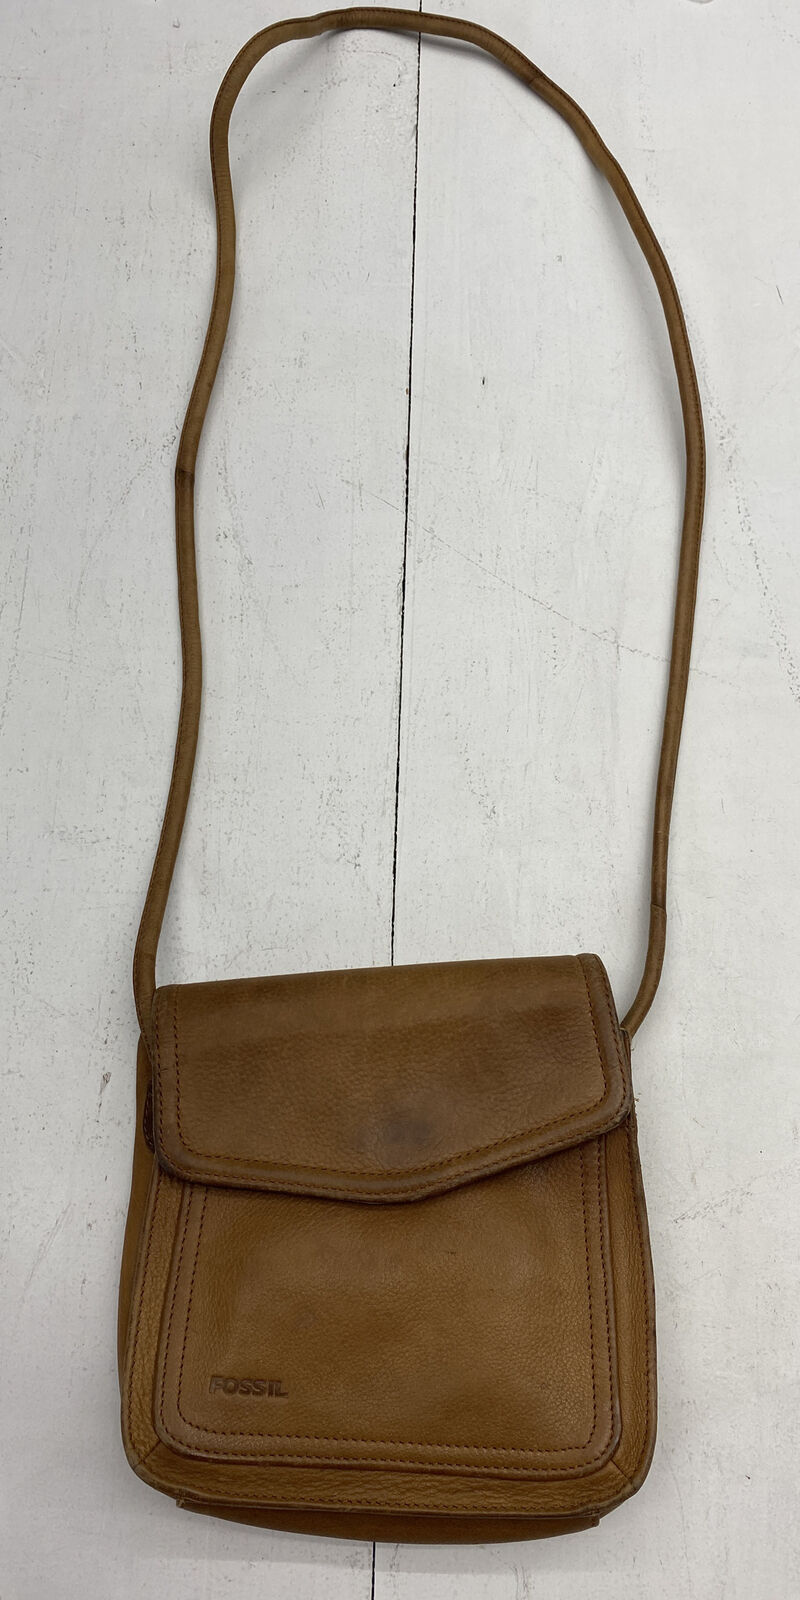 Fossil Mini Bags & Handbags for Women for sale | eBay